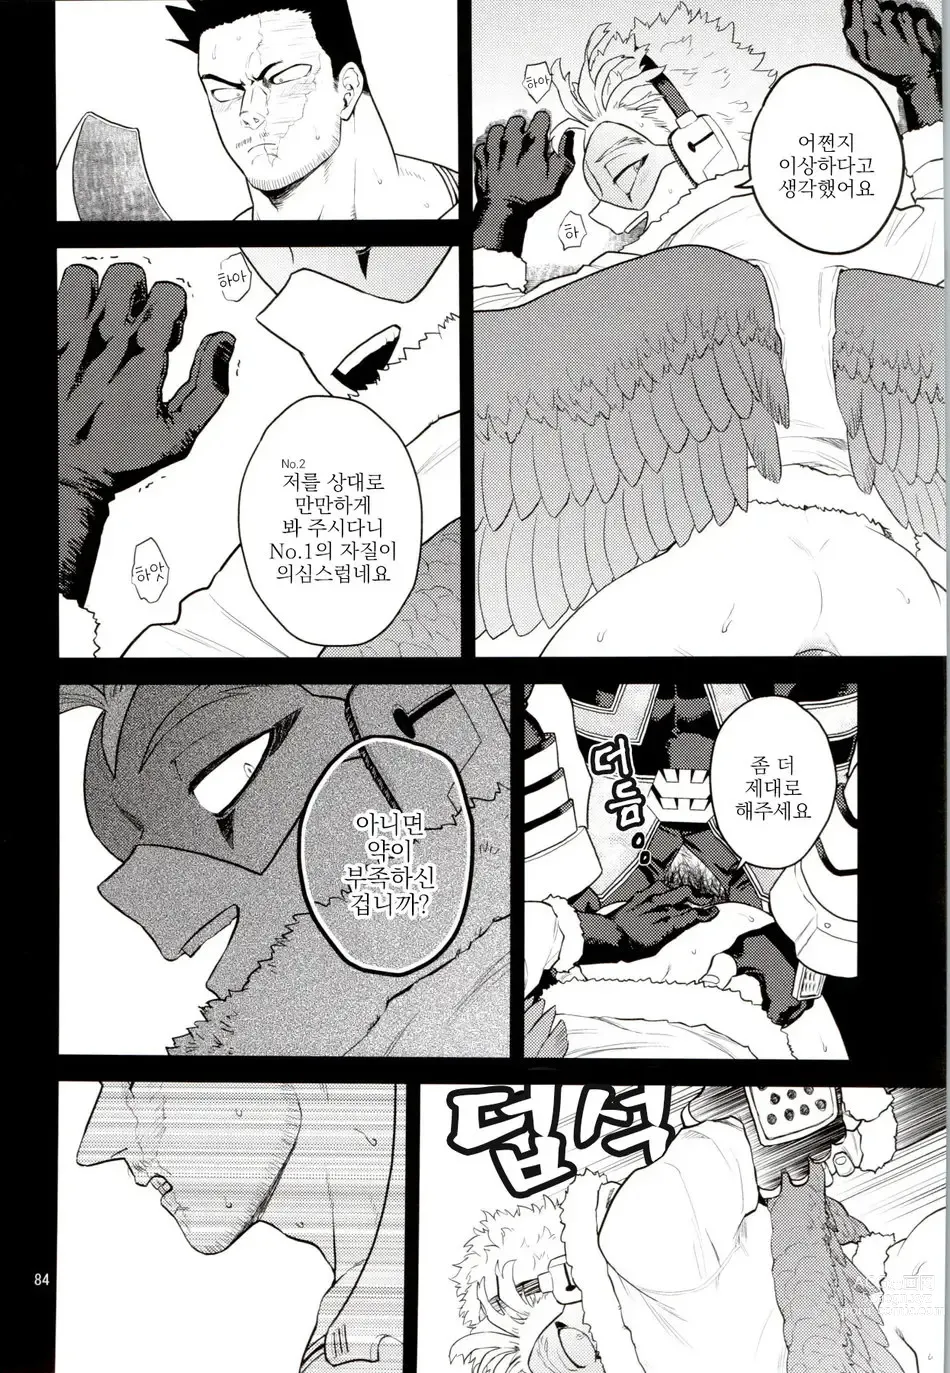 Page 83 of doujinshi Enholog #01